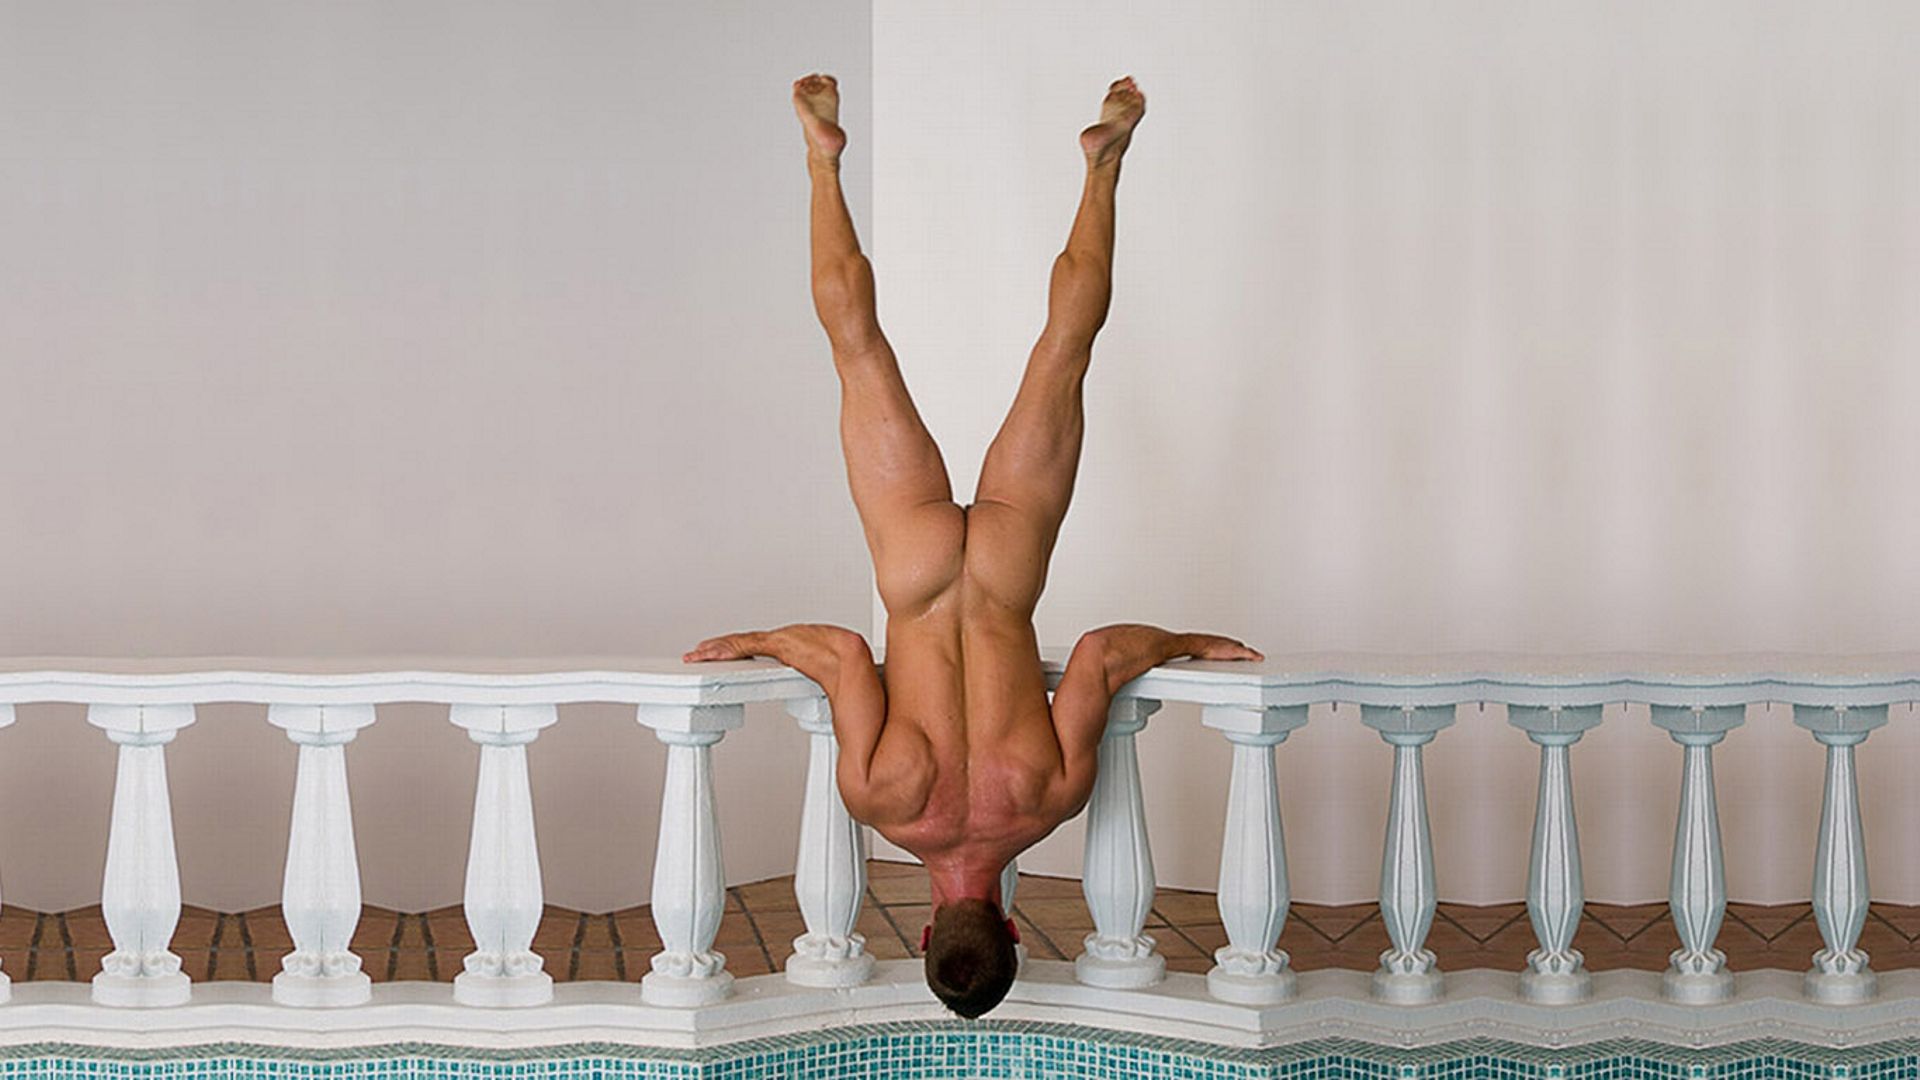 голый мужчина делает стойку вверх ногами на бассейном, фото красивого мужчины